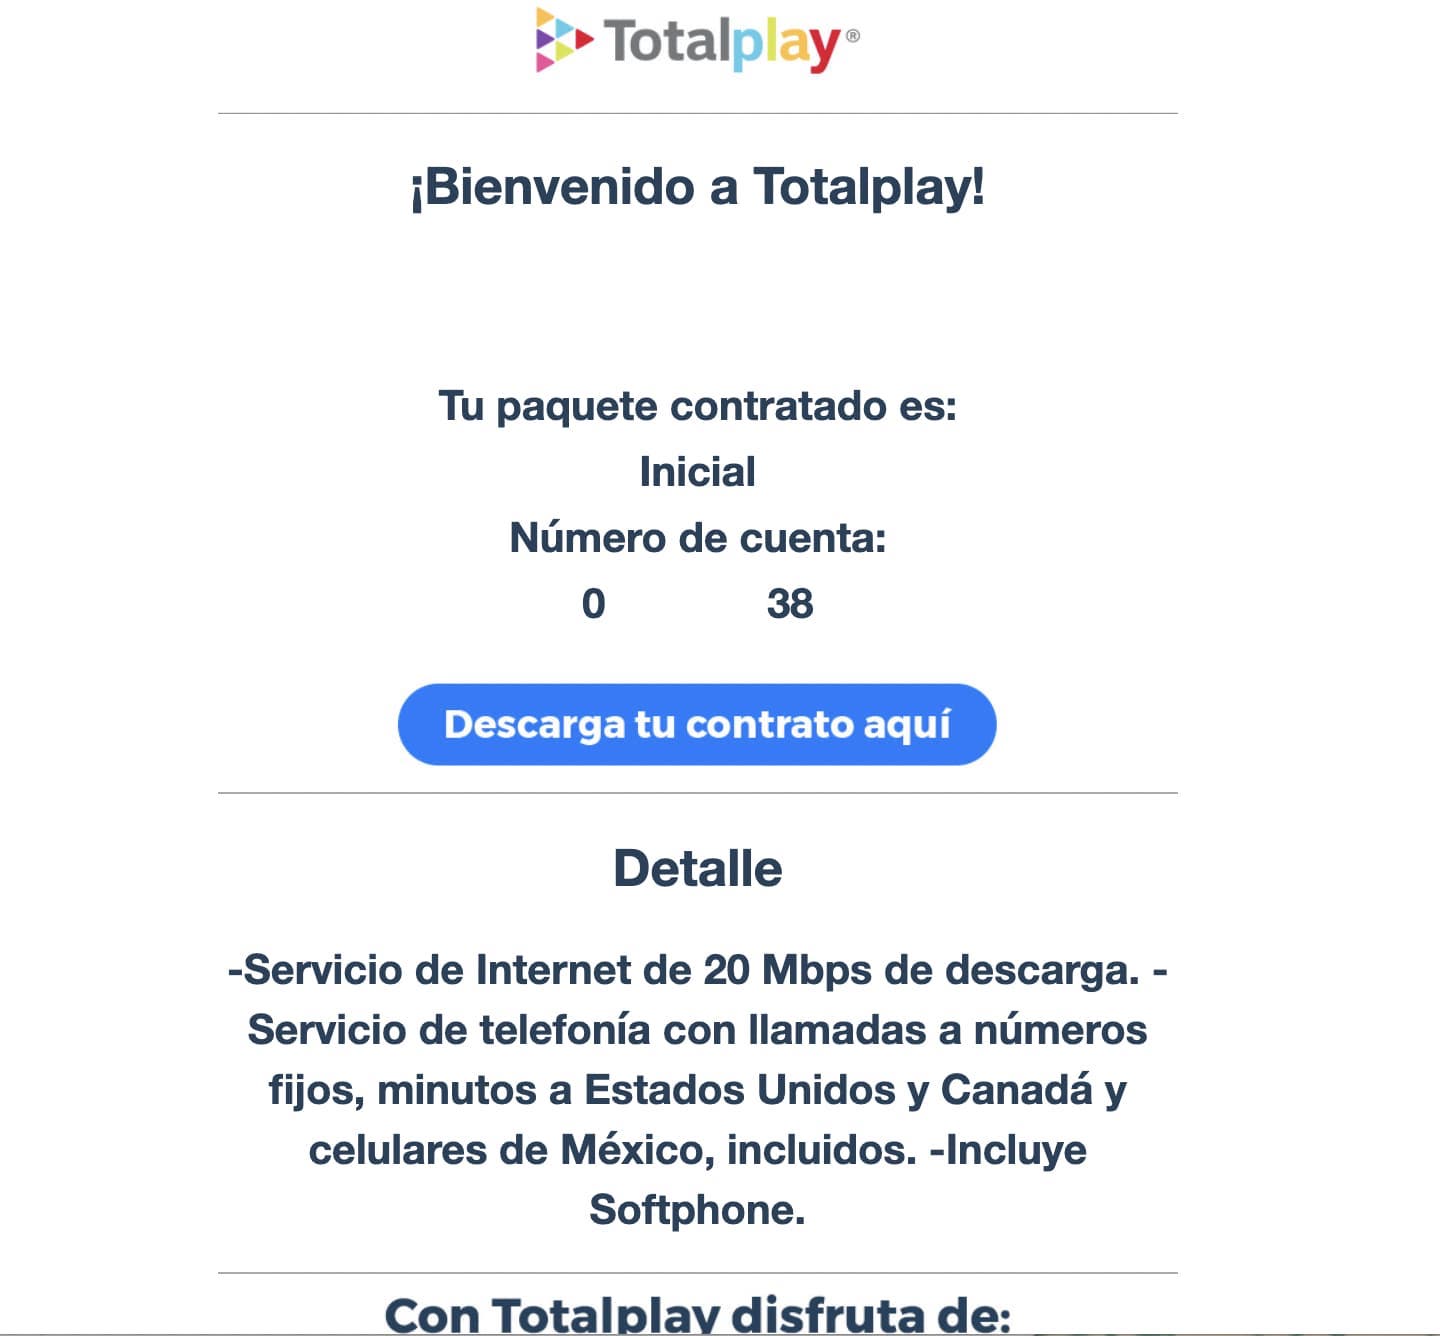 Ejemplo de mensaje de bienvenida con información de servicio contratado: Totalplay